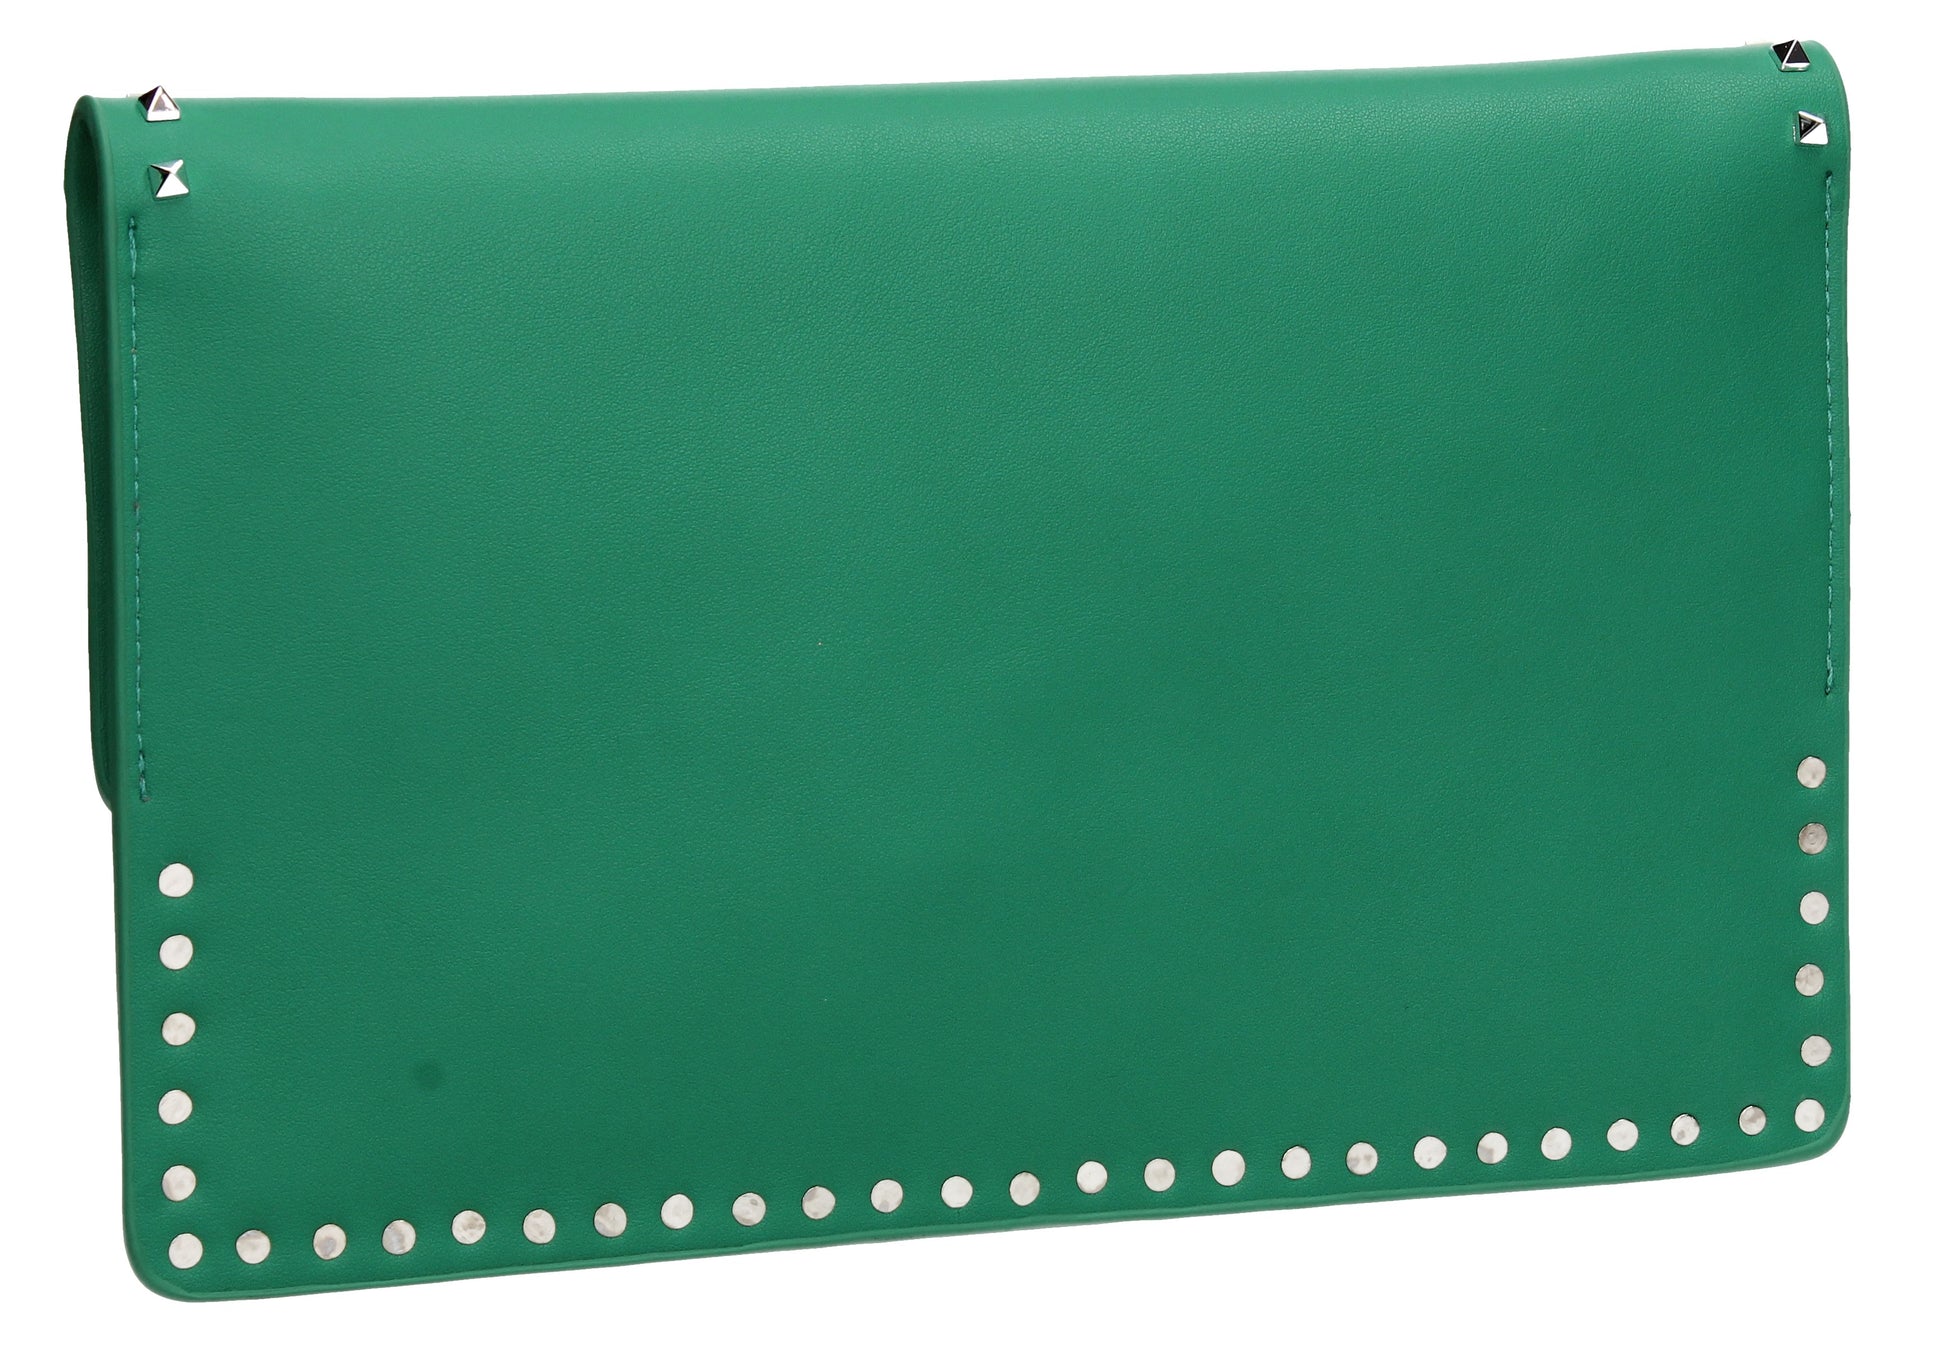 SWANKYSWANS Ciera Clutch Bag Green Cute Cheap Clutch Bag For Weddings School and Work